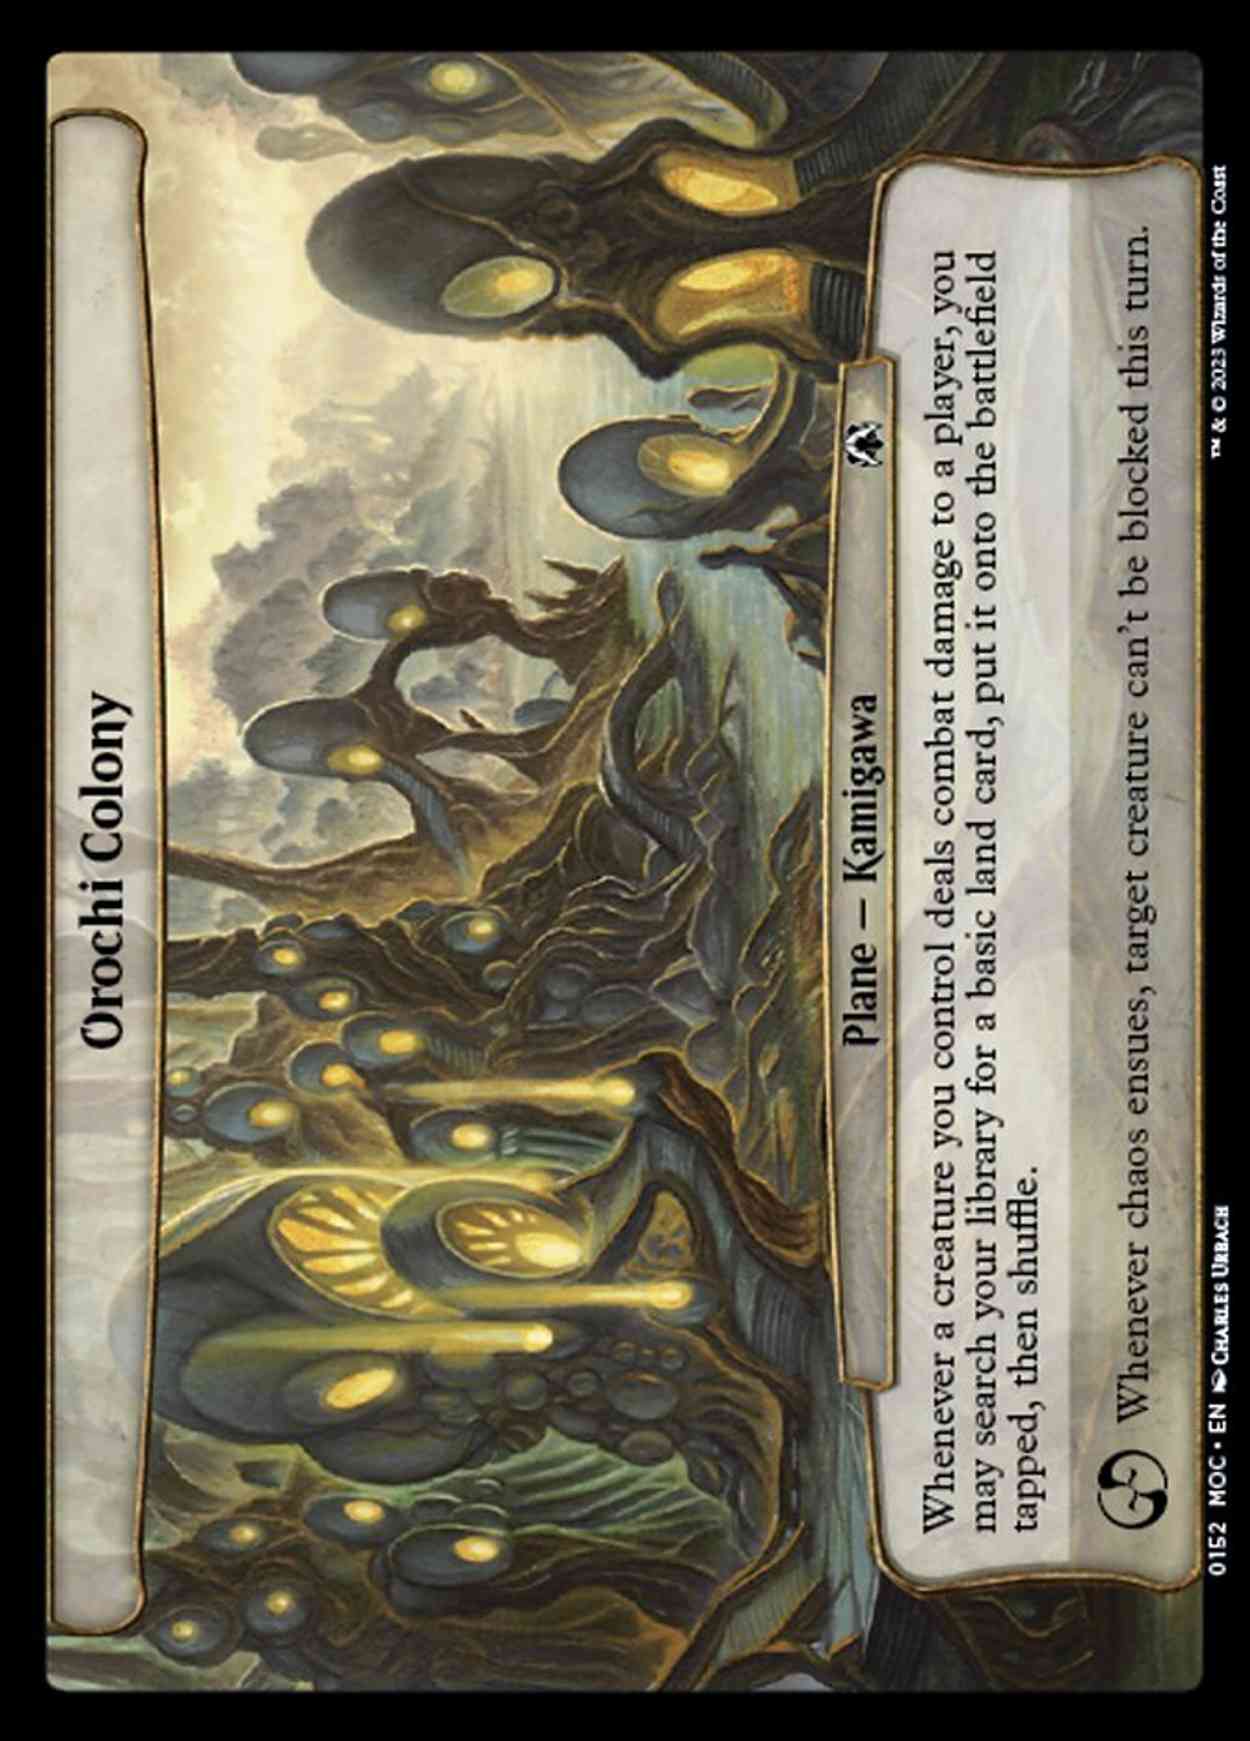 Orochi Colony magic card front